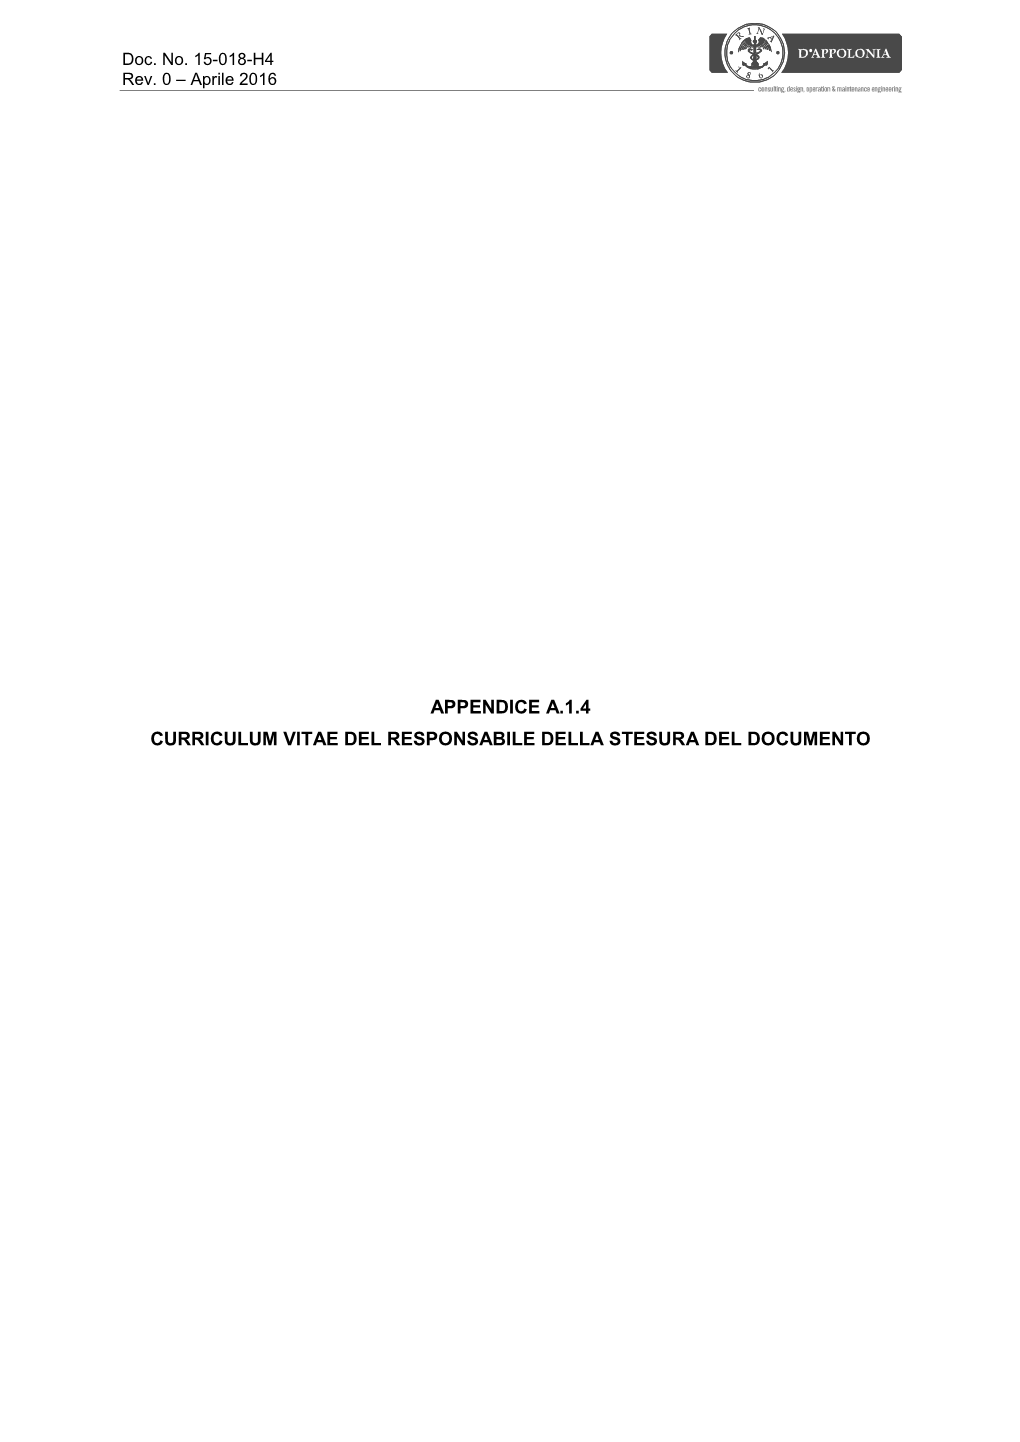 Appendice A.1.4 Curriculum Vitae Del Responsabile Della Stesura Del Documento